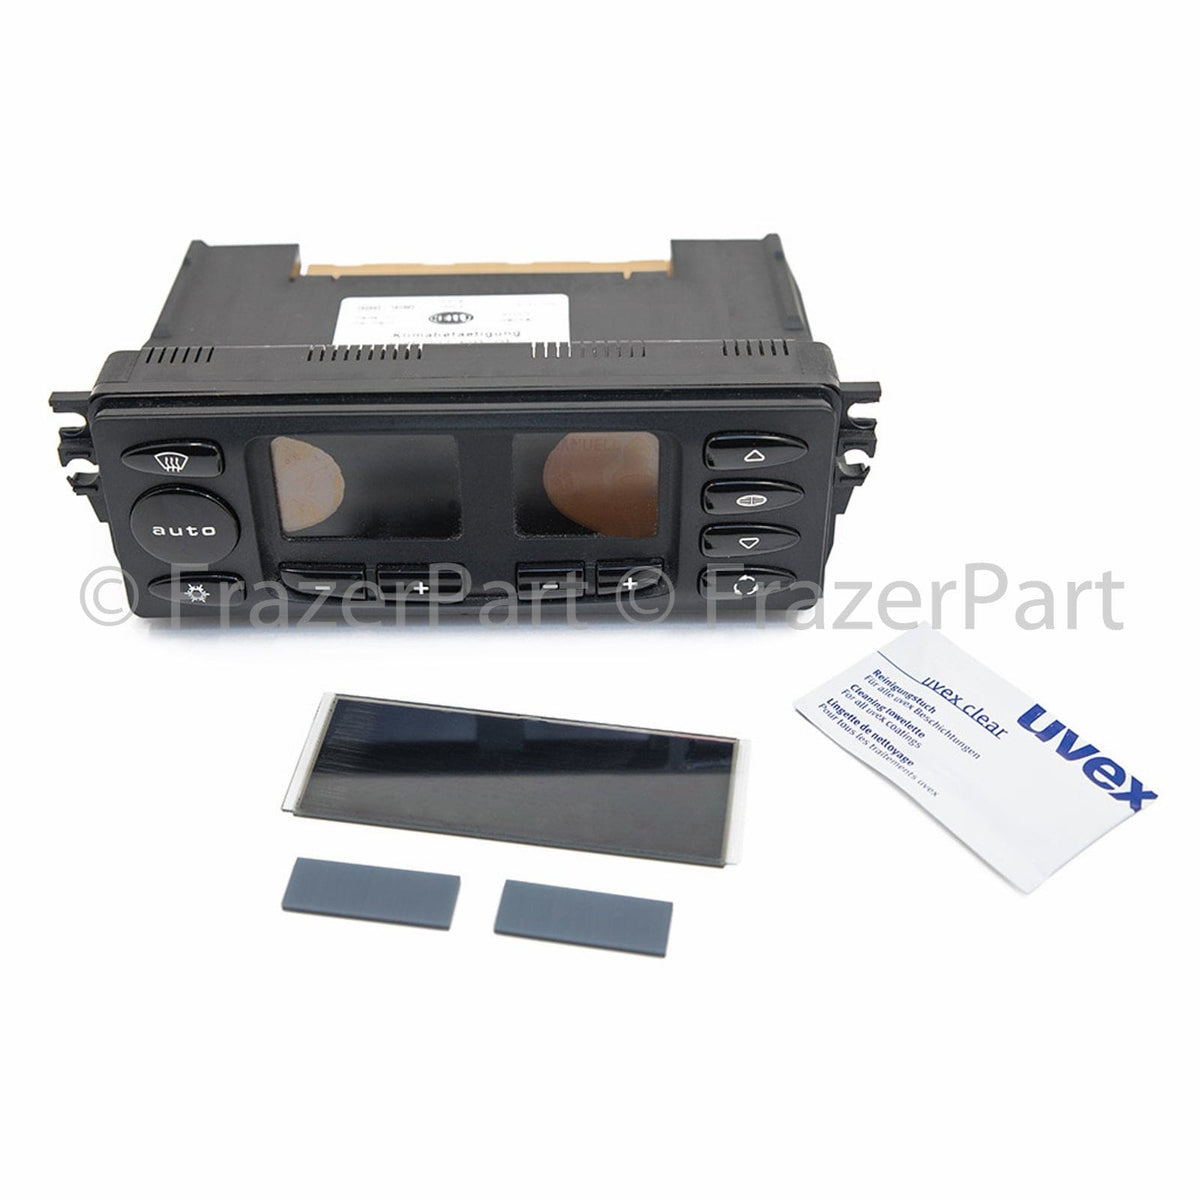 986 Boxster & 996 Carrera digital heater & Air Con control LCD screen repair kit